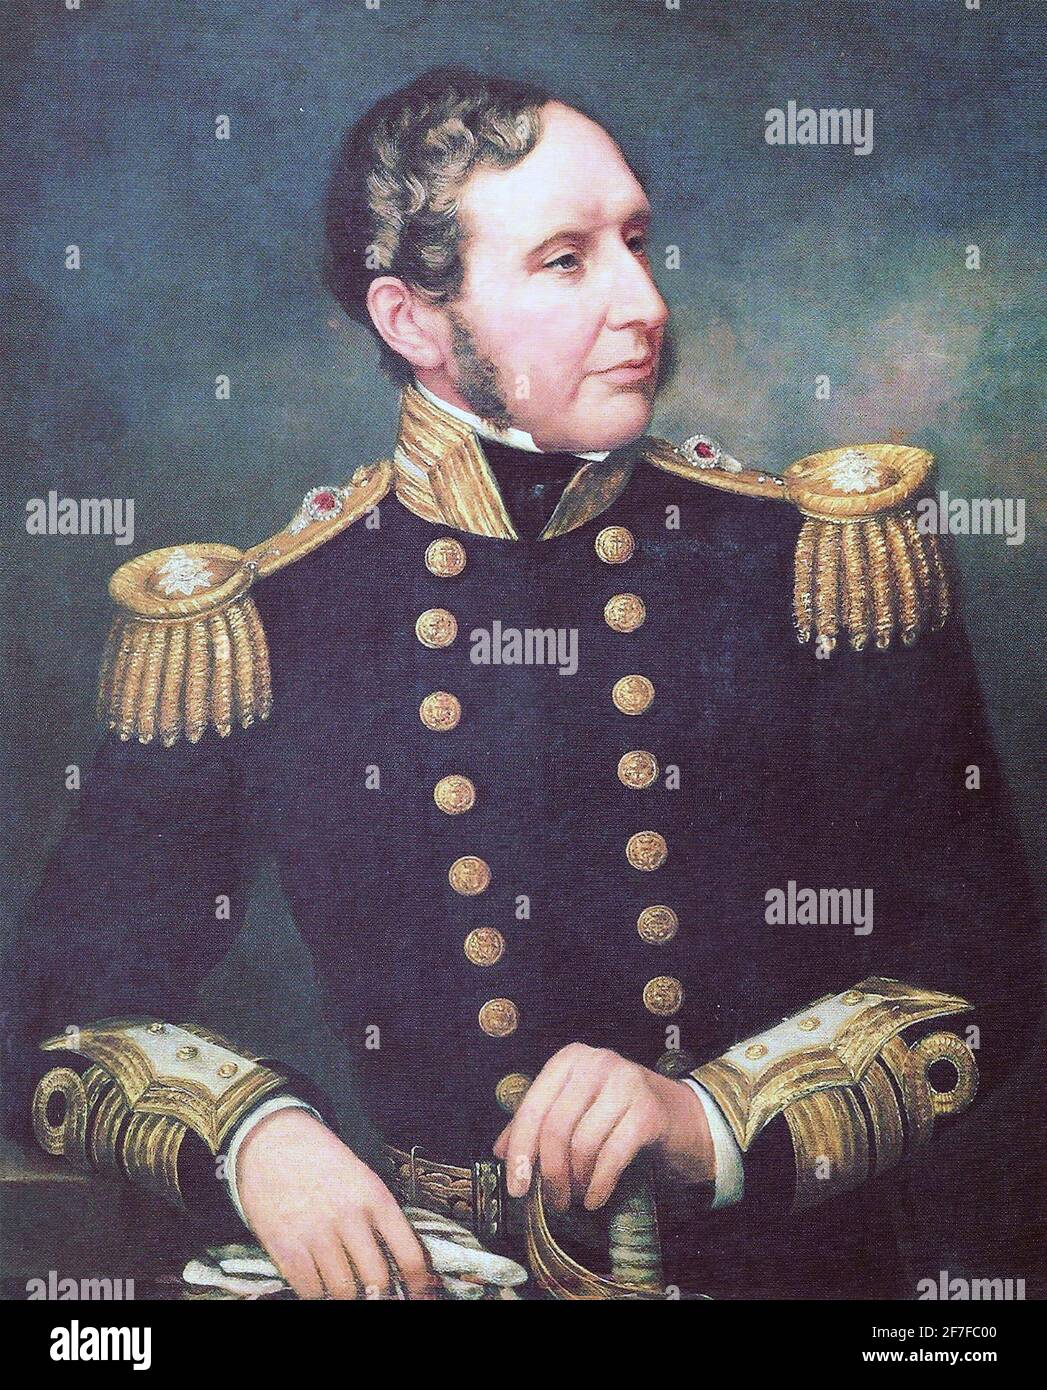 ROBERT FITZROY (1805-1865) Offizier der Royal Navy, der den Beagle führte Und ein pionierender Meteorologe Stockfoto